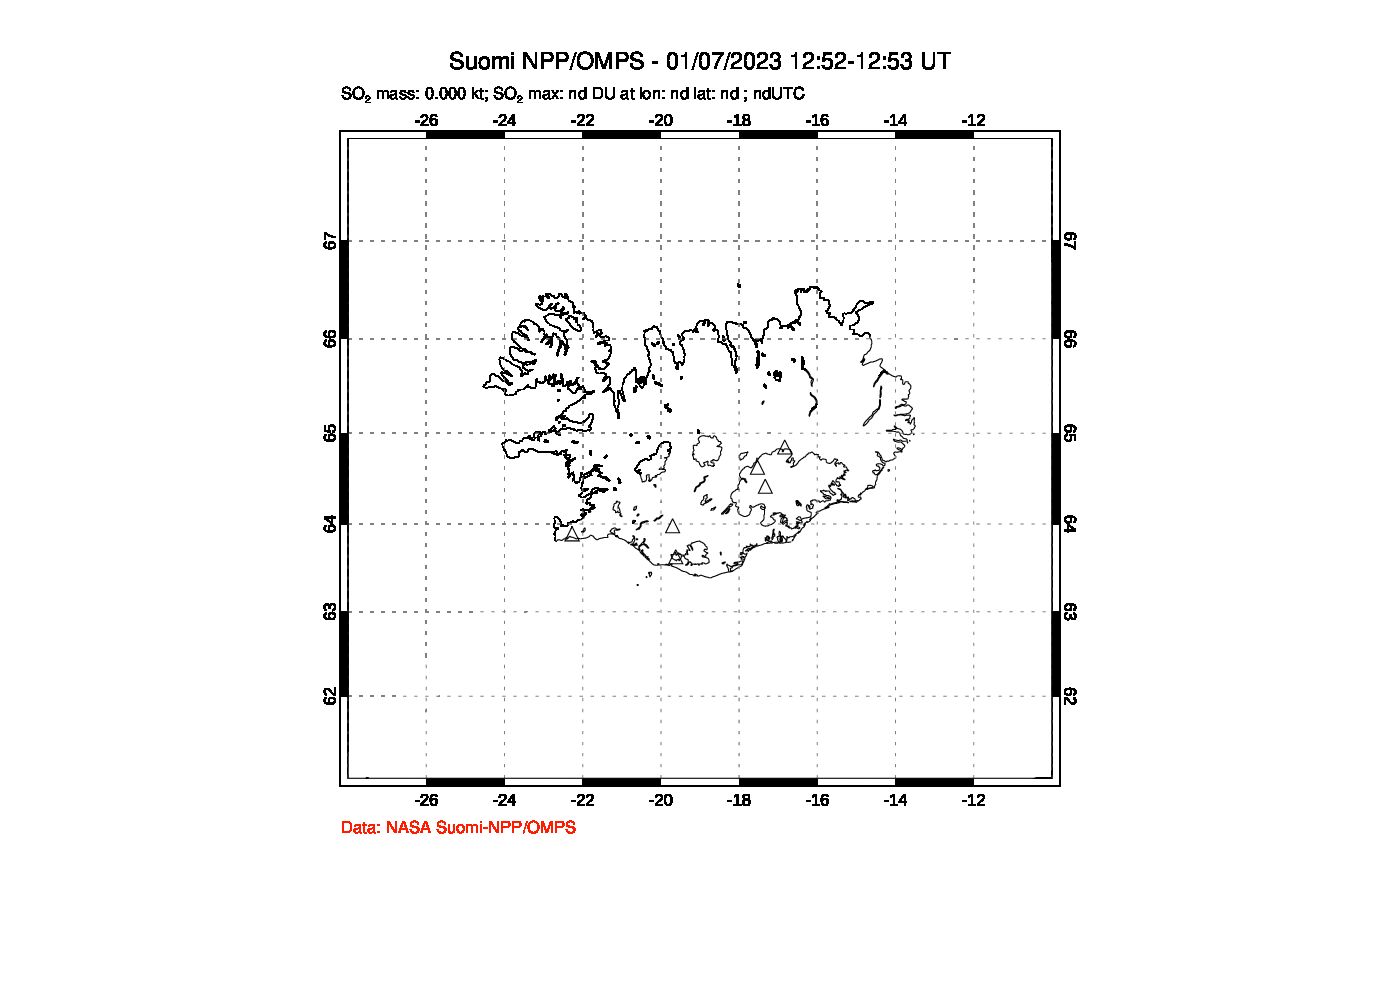 A sulfur dioxide image over Iceland on Jan 07, 2023.